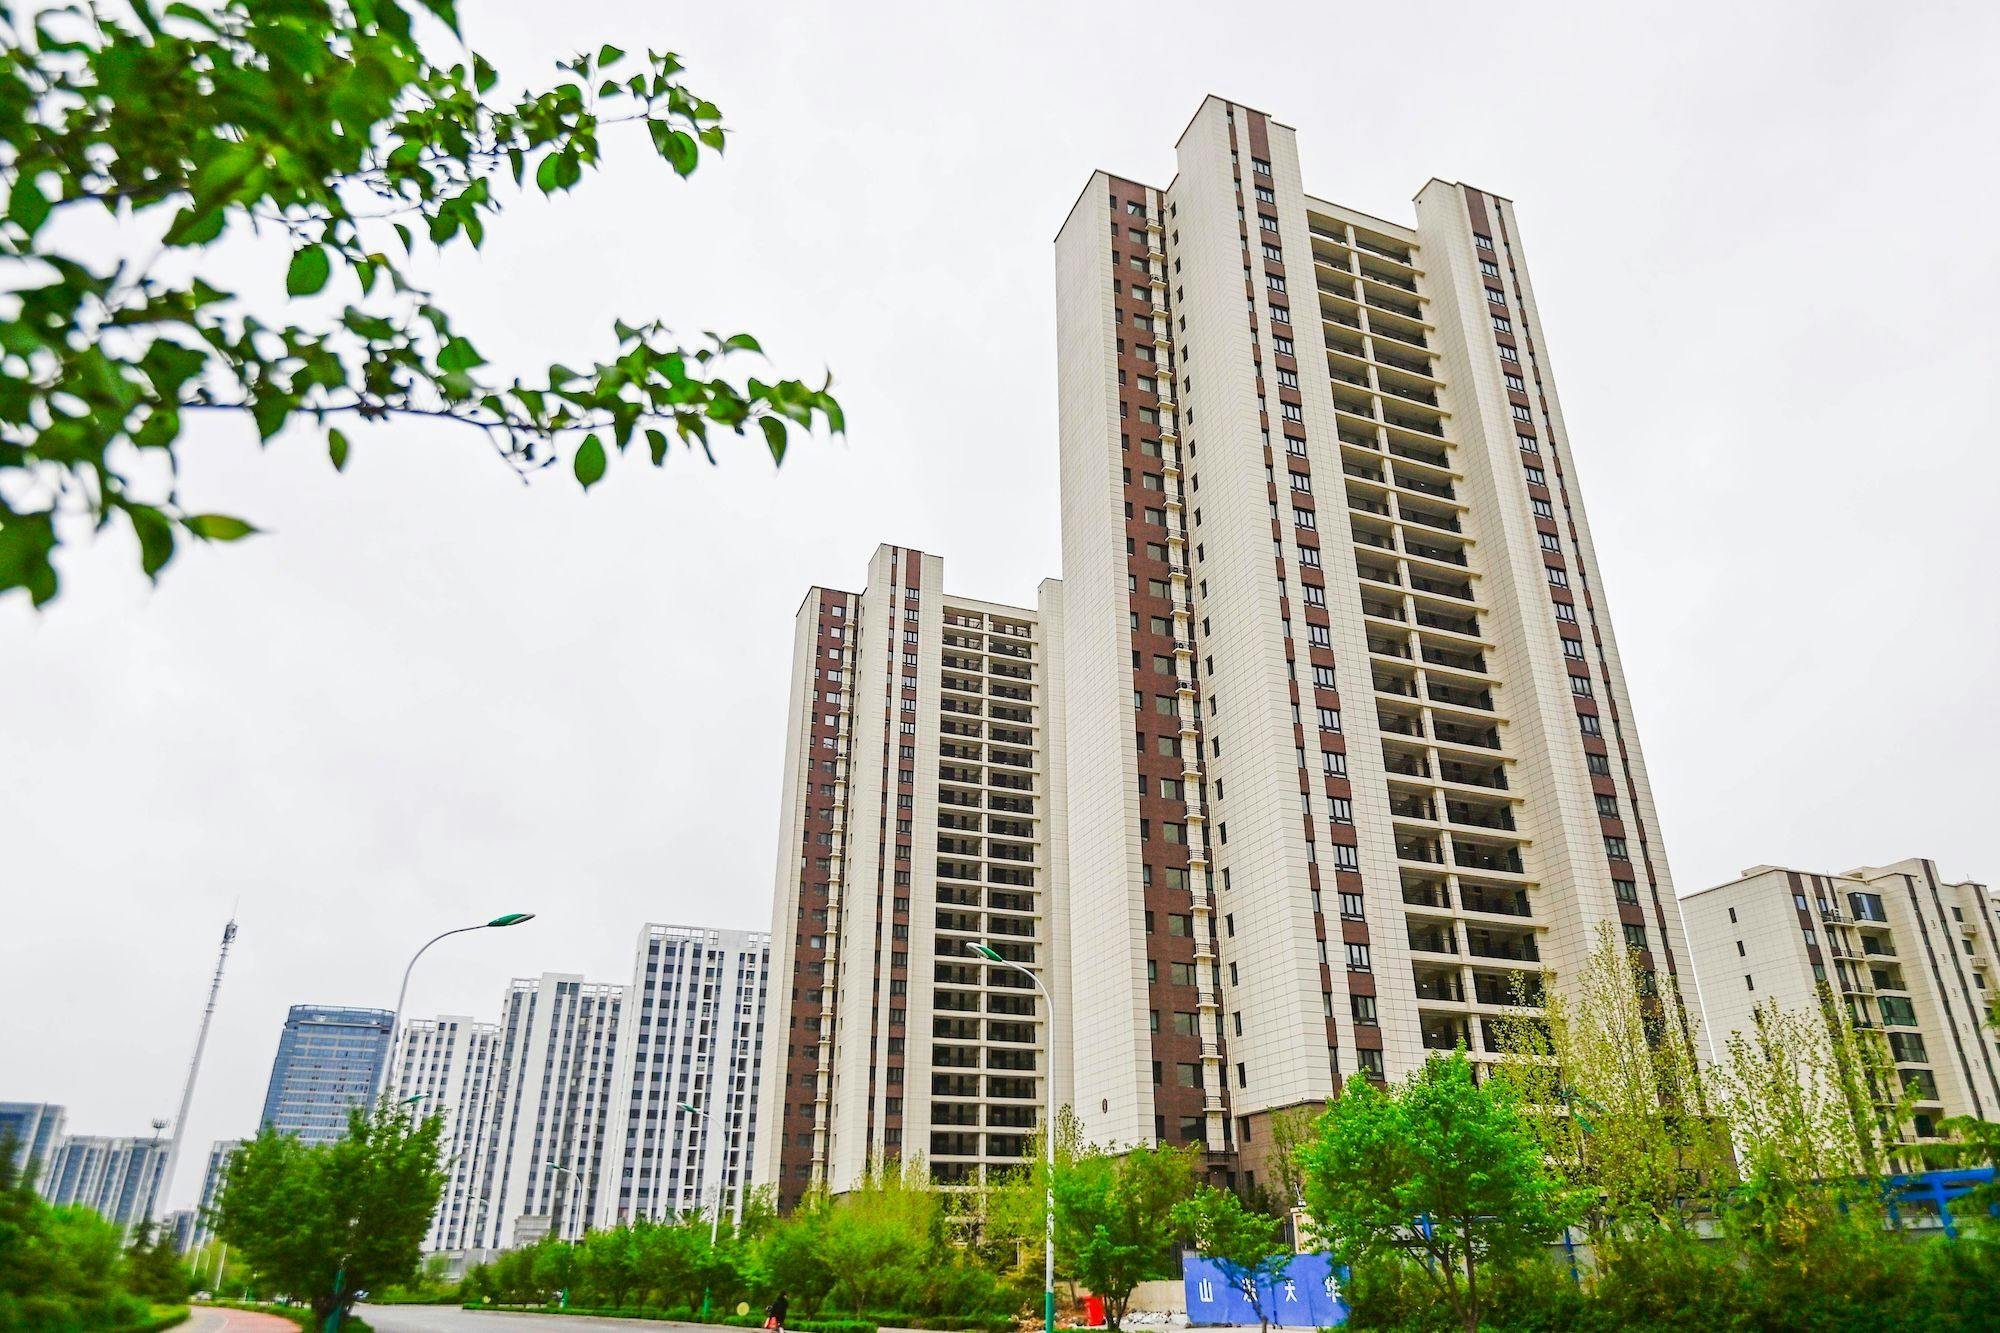 Wohneigentum in China, Eigentum, Immobilien, Immobilienmarkt: ein kommerzielles Wohnbauprojekt, das in der Stadt Qingzhou in der ostchinesischen Provinz Shandong in Betrieb genommen werden soll.